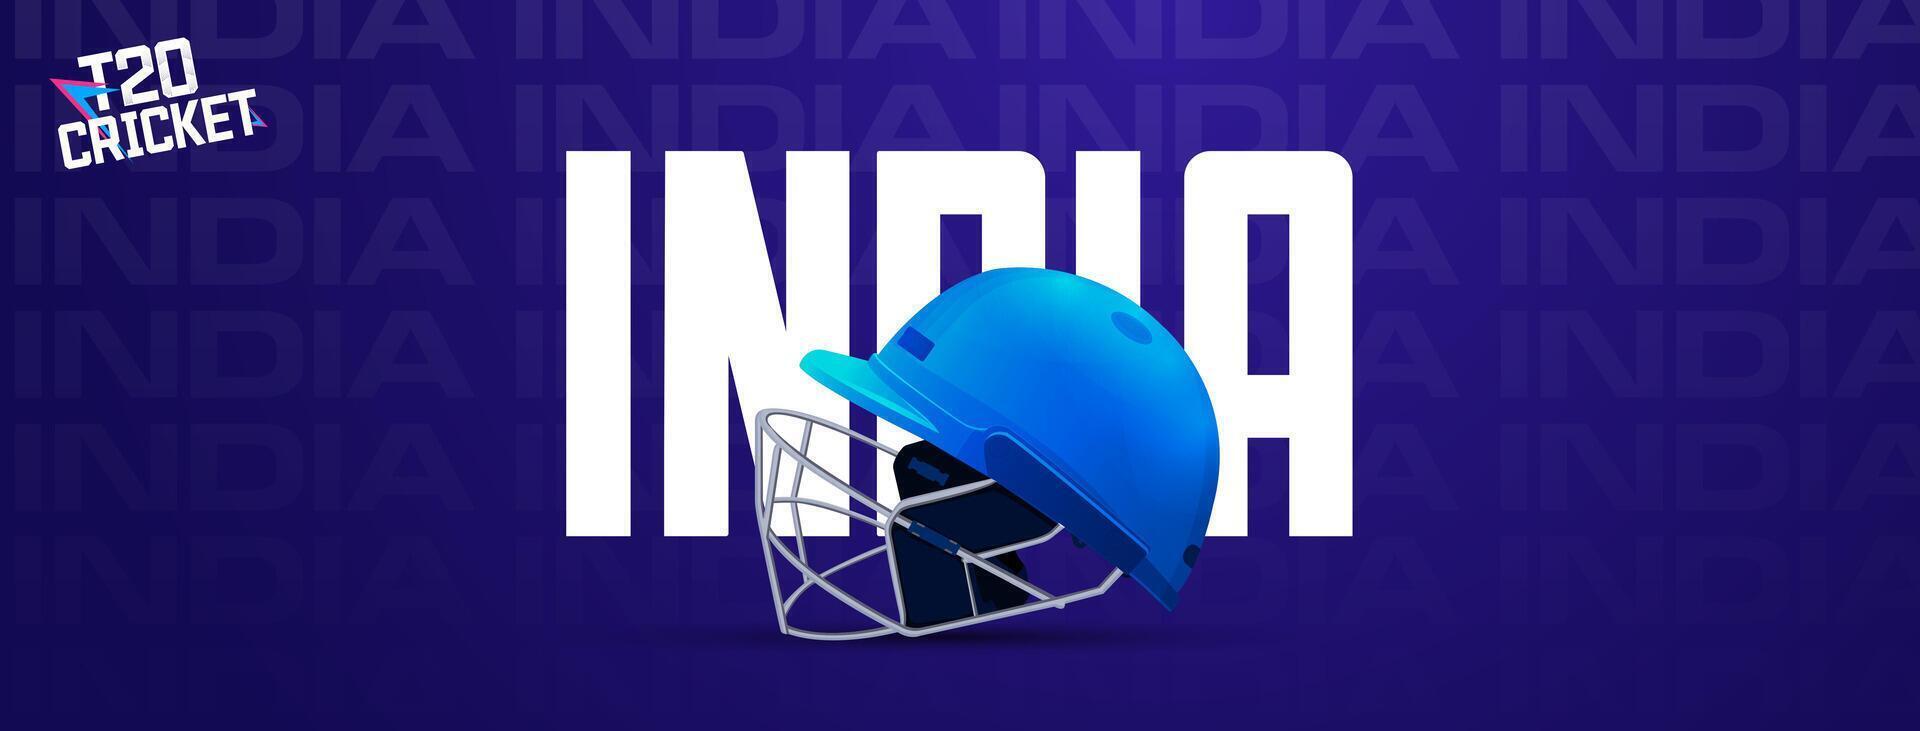 illustrazione per cricket manifesto con cricket sfera, porticina ceppi, cricket caschi manifesto vettore